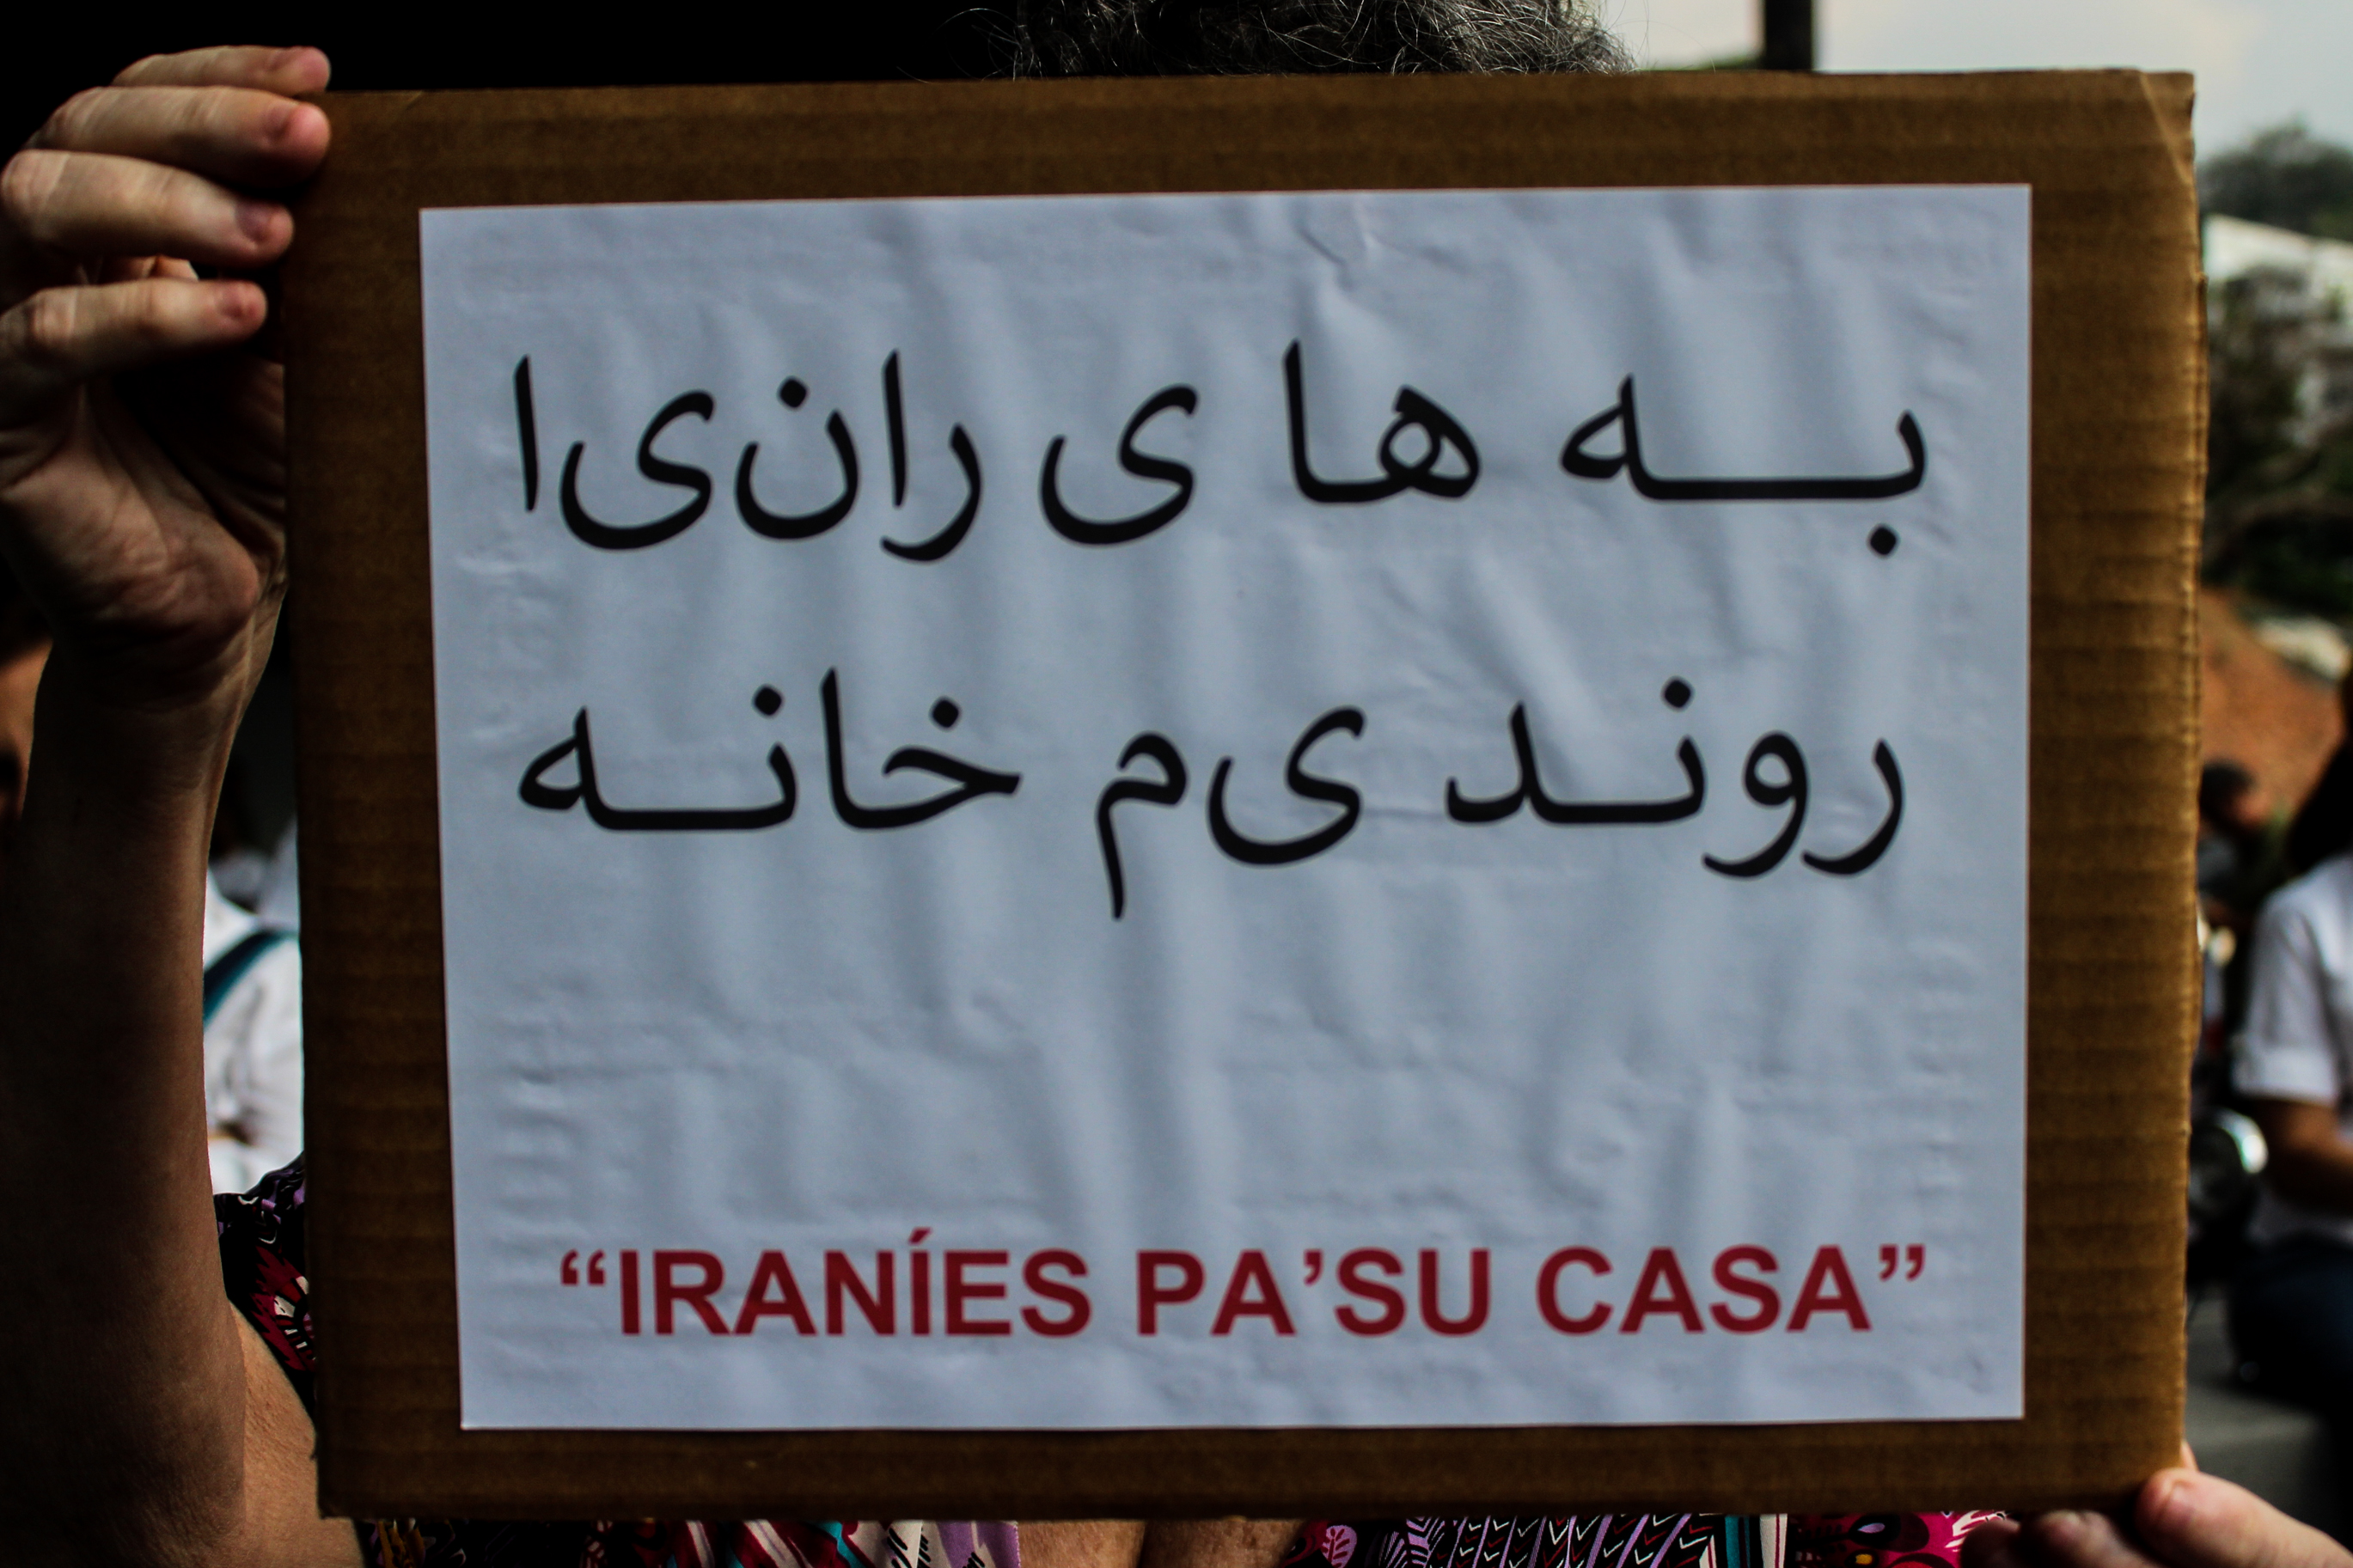 ¡En su propio idioma! Venezolanos mandaron pa’ su casa a agentes rusos e iraníes (FOTOS)